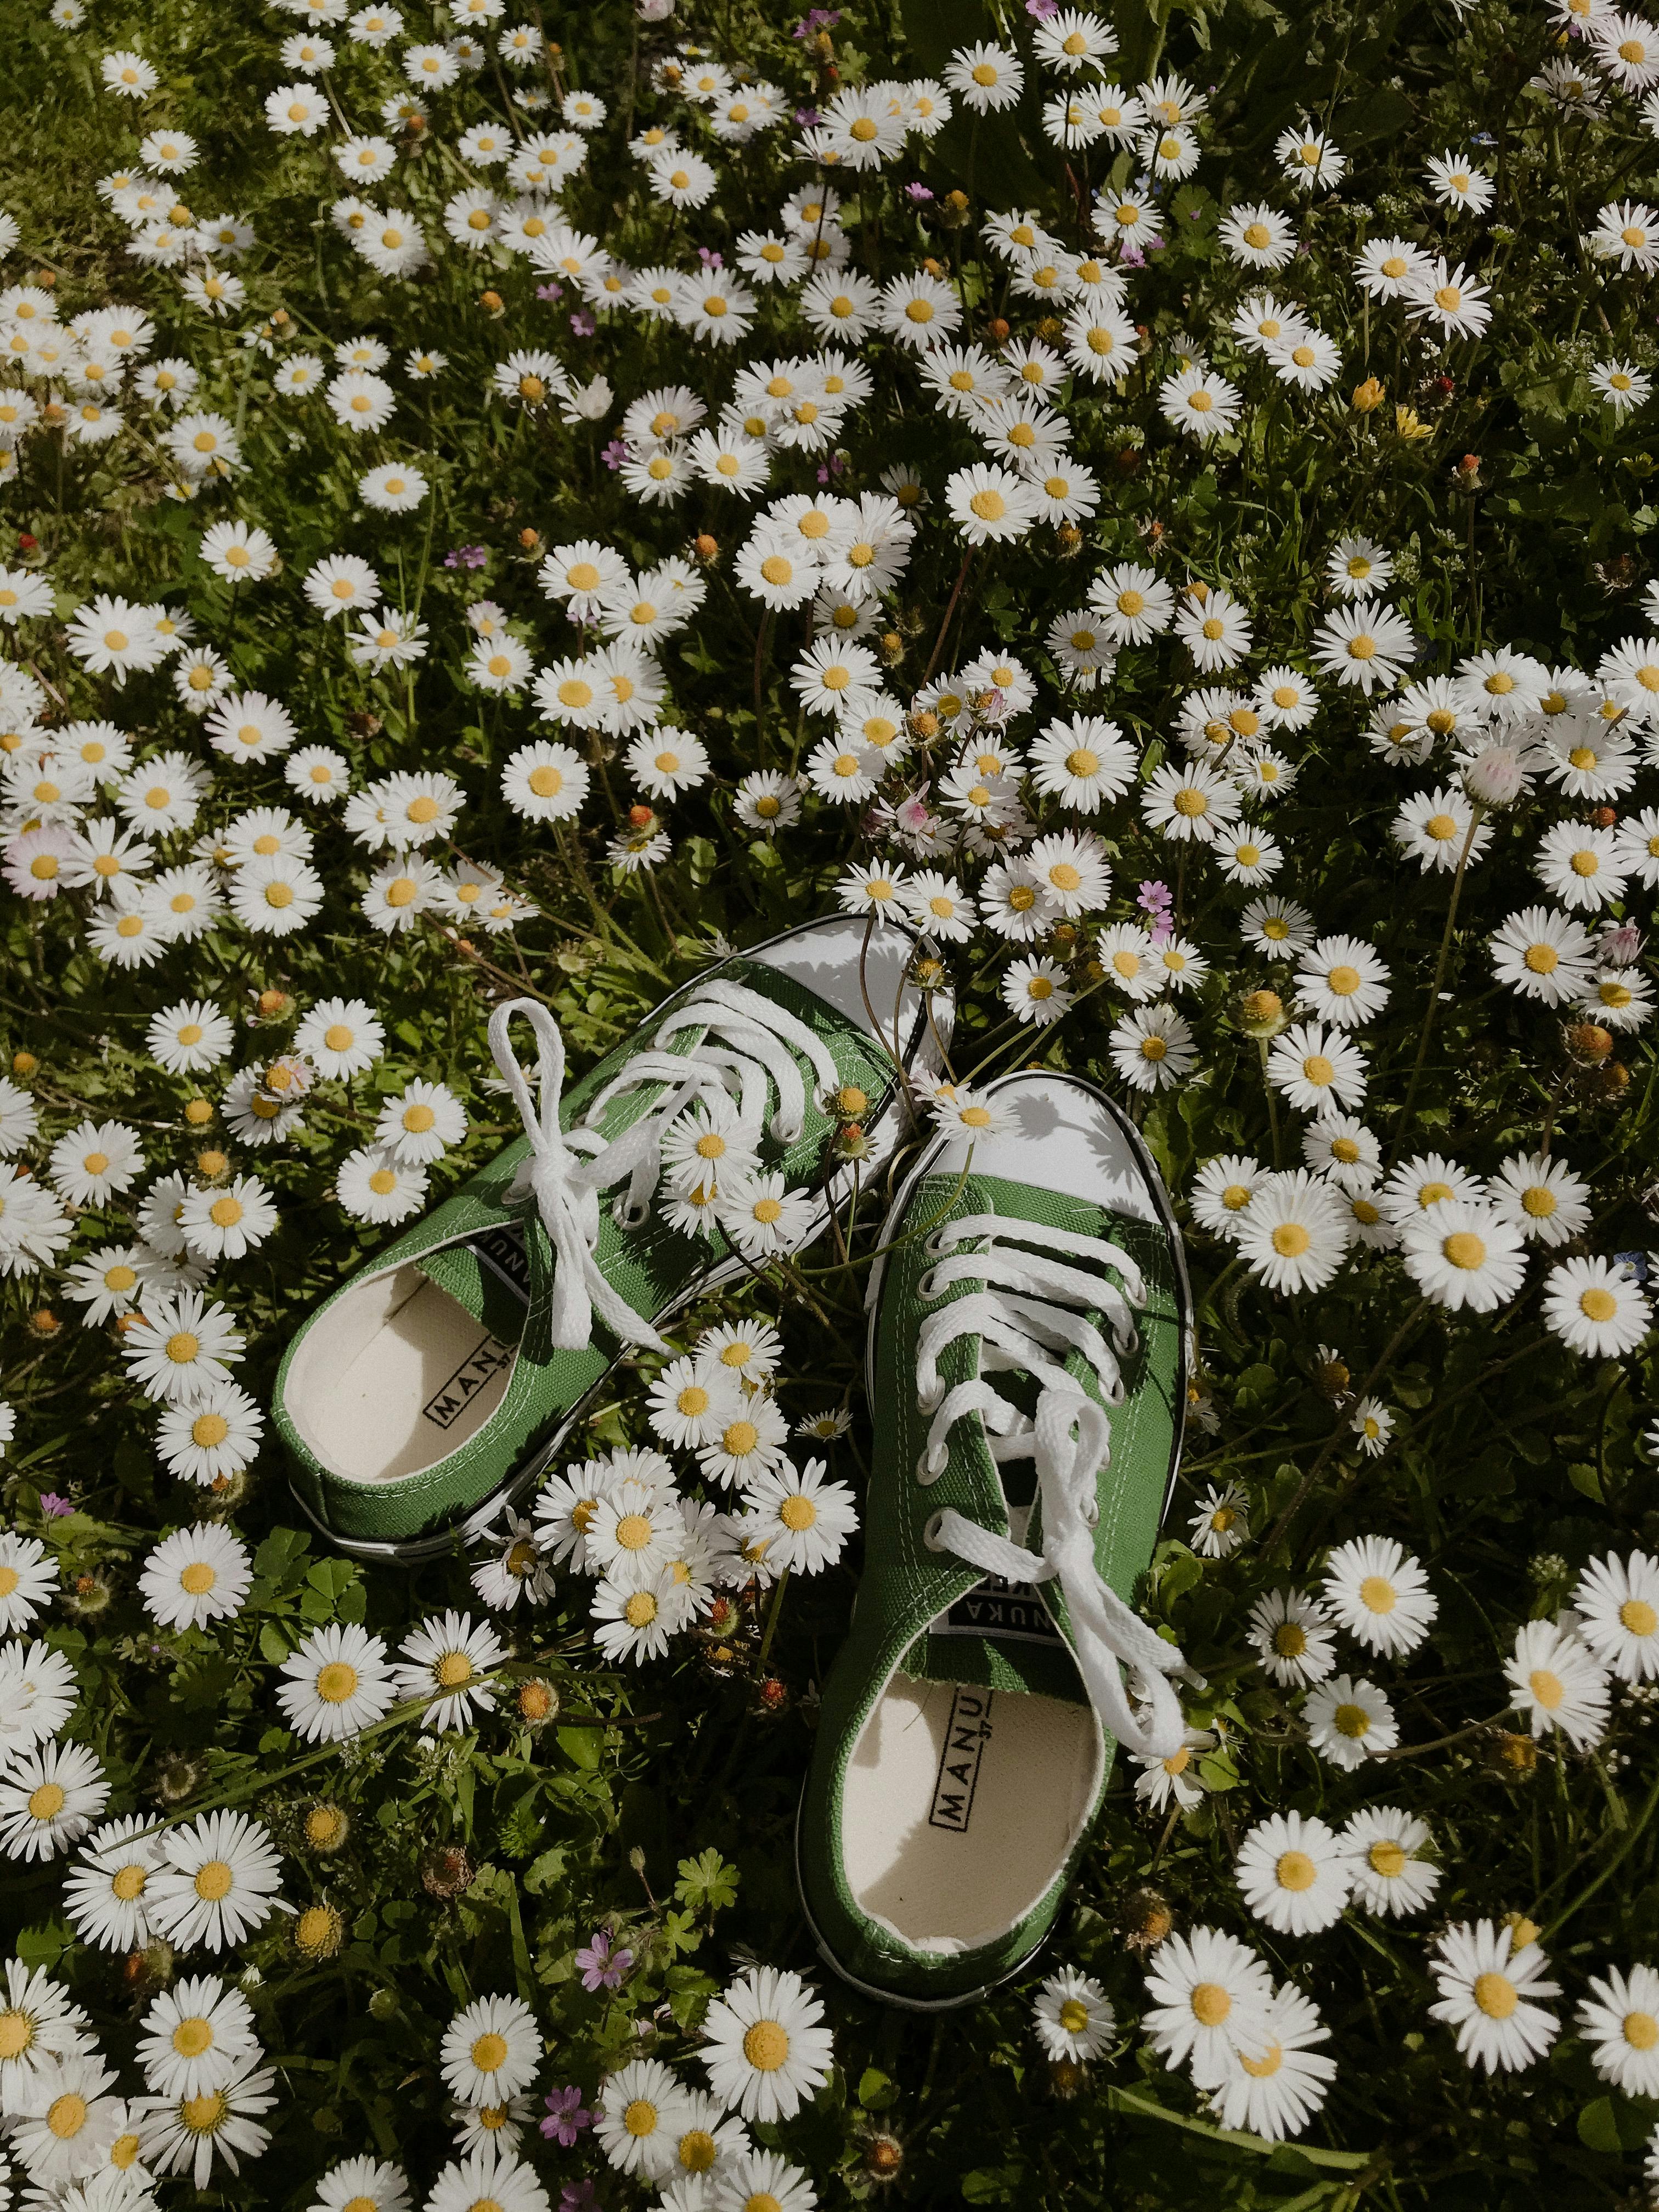 Hoa cúc (Chamomile) là biểu tượng của sự tươi trẻ, tinh tế và đầy yêu thương. Những cánh hoa nhỏ xinh trắng tinh khiết sẽ mang đến cho bạn sự bình yên và tha hồ thư giãn. Hãy click vào hình ảnh liên quan để tận hưởng những giây phút thư giãn thật thoải mái.